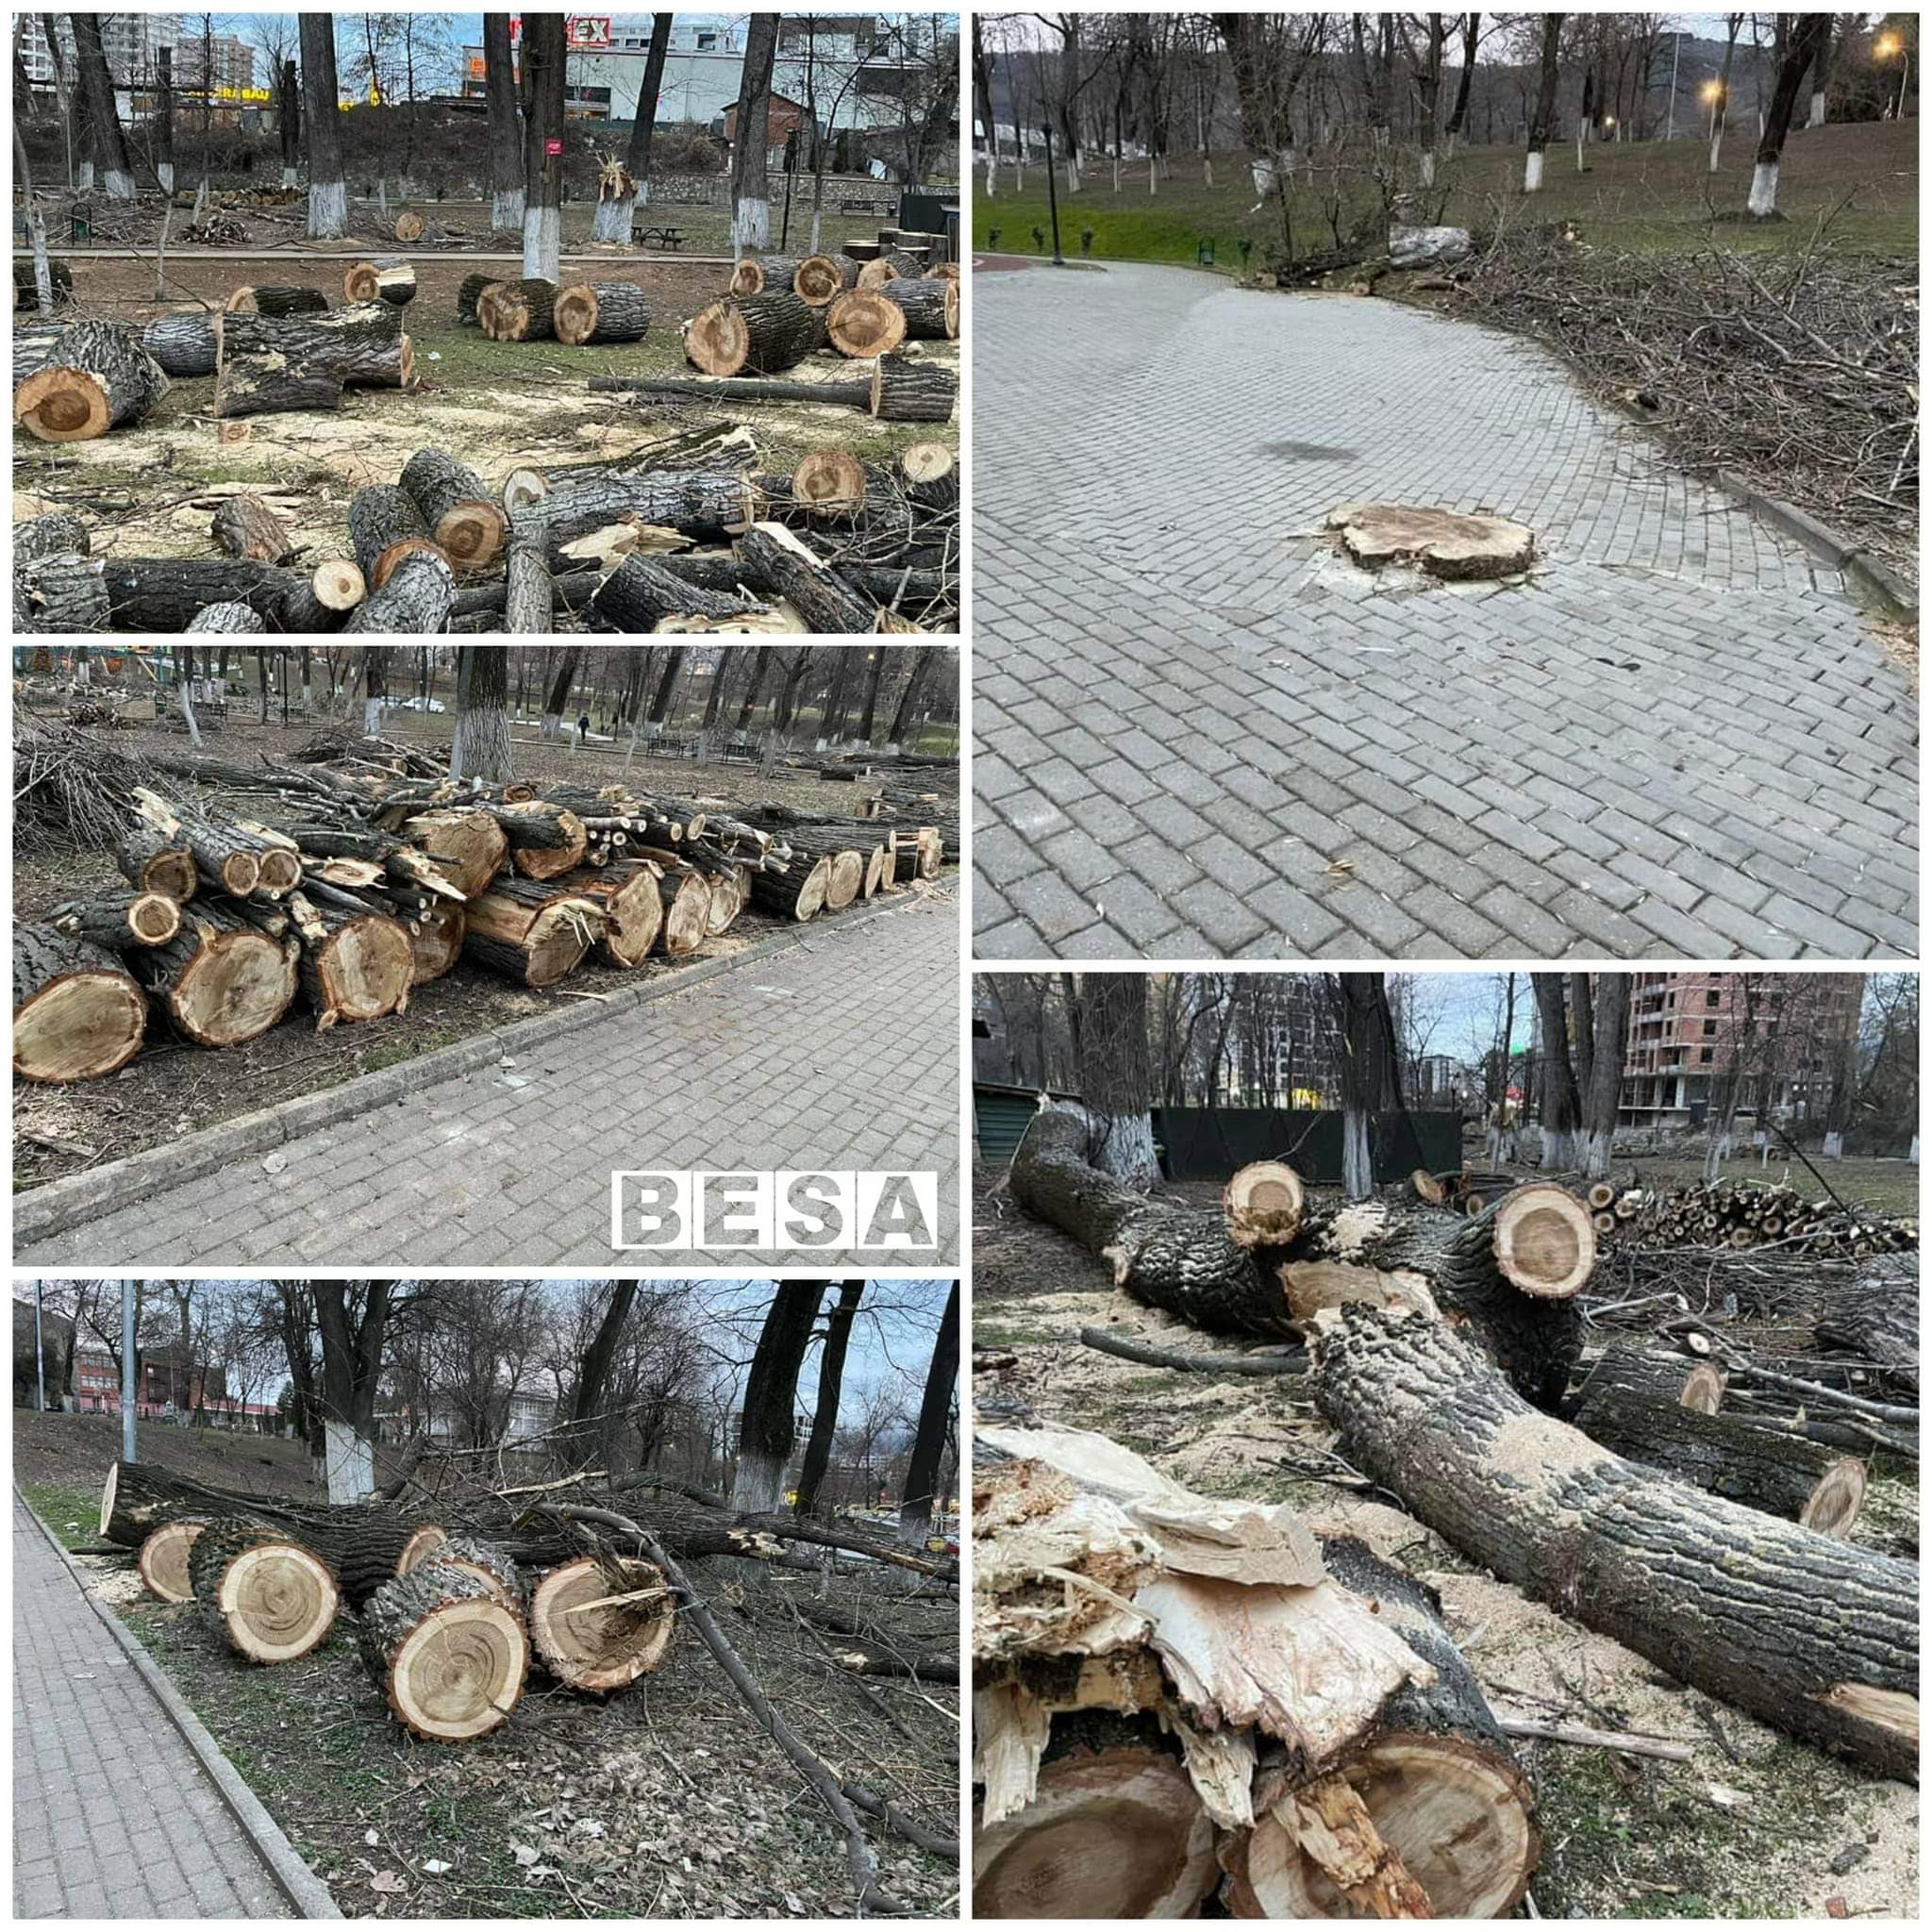 Aktakuzë për prerjen dhe krasitjen e drunjëve në parkun e qytetit të Prizrenit